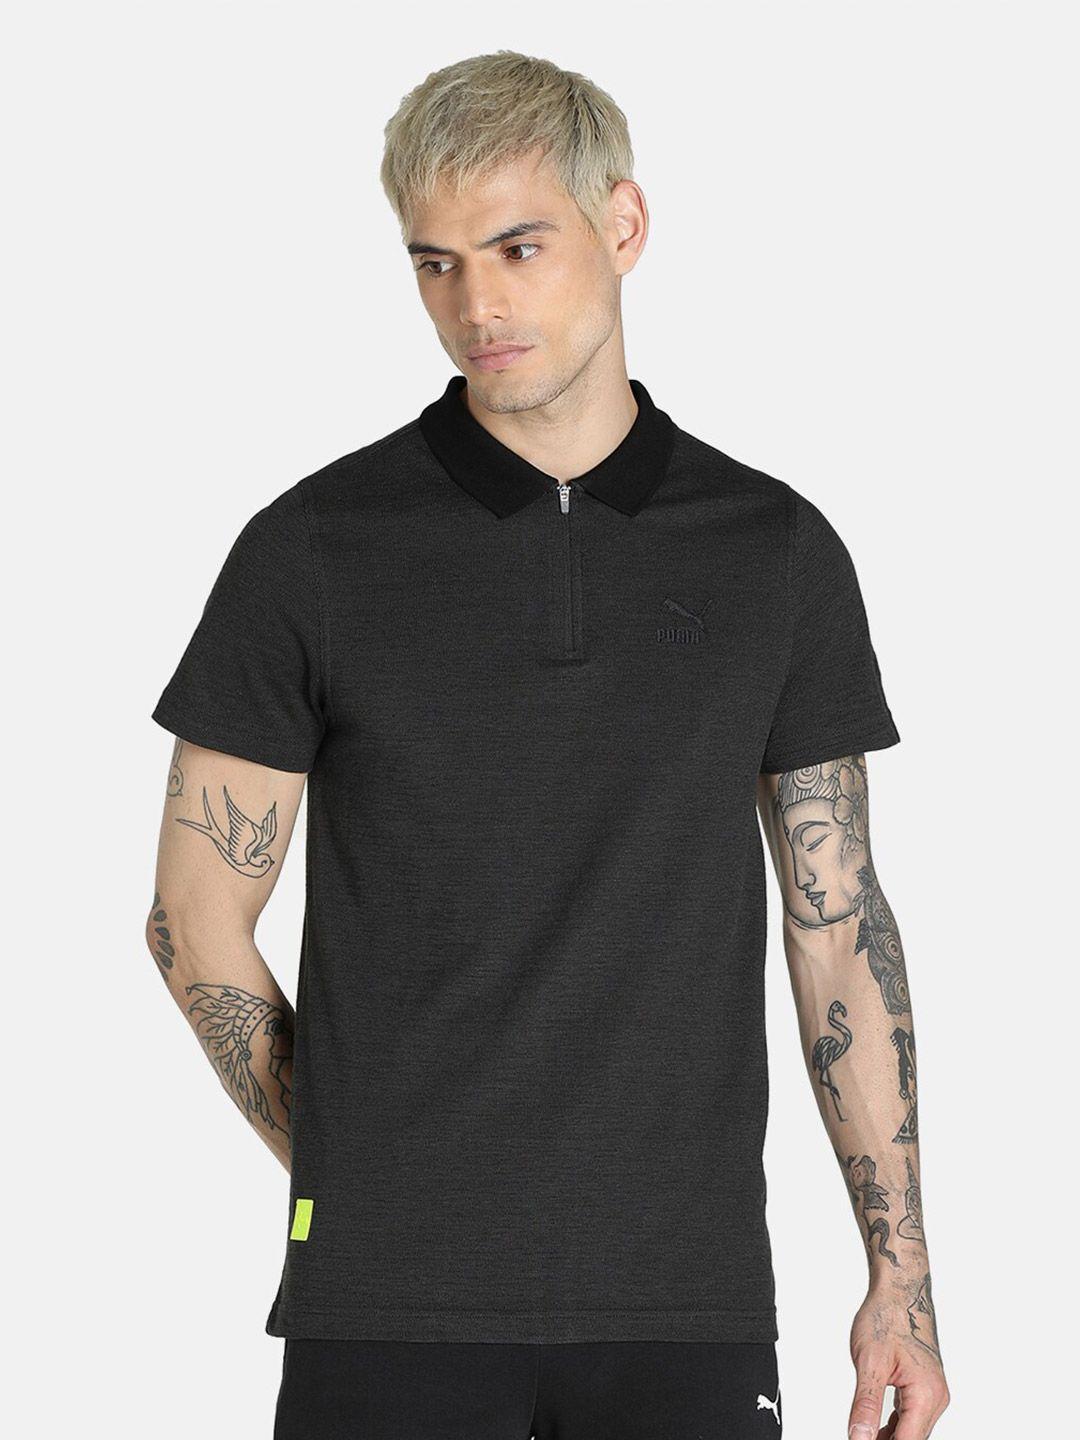 puma-men-black-virat-kohli-polo-collar-slim-fit-cotton-t-shirt